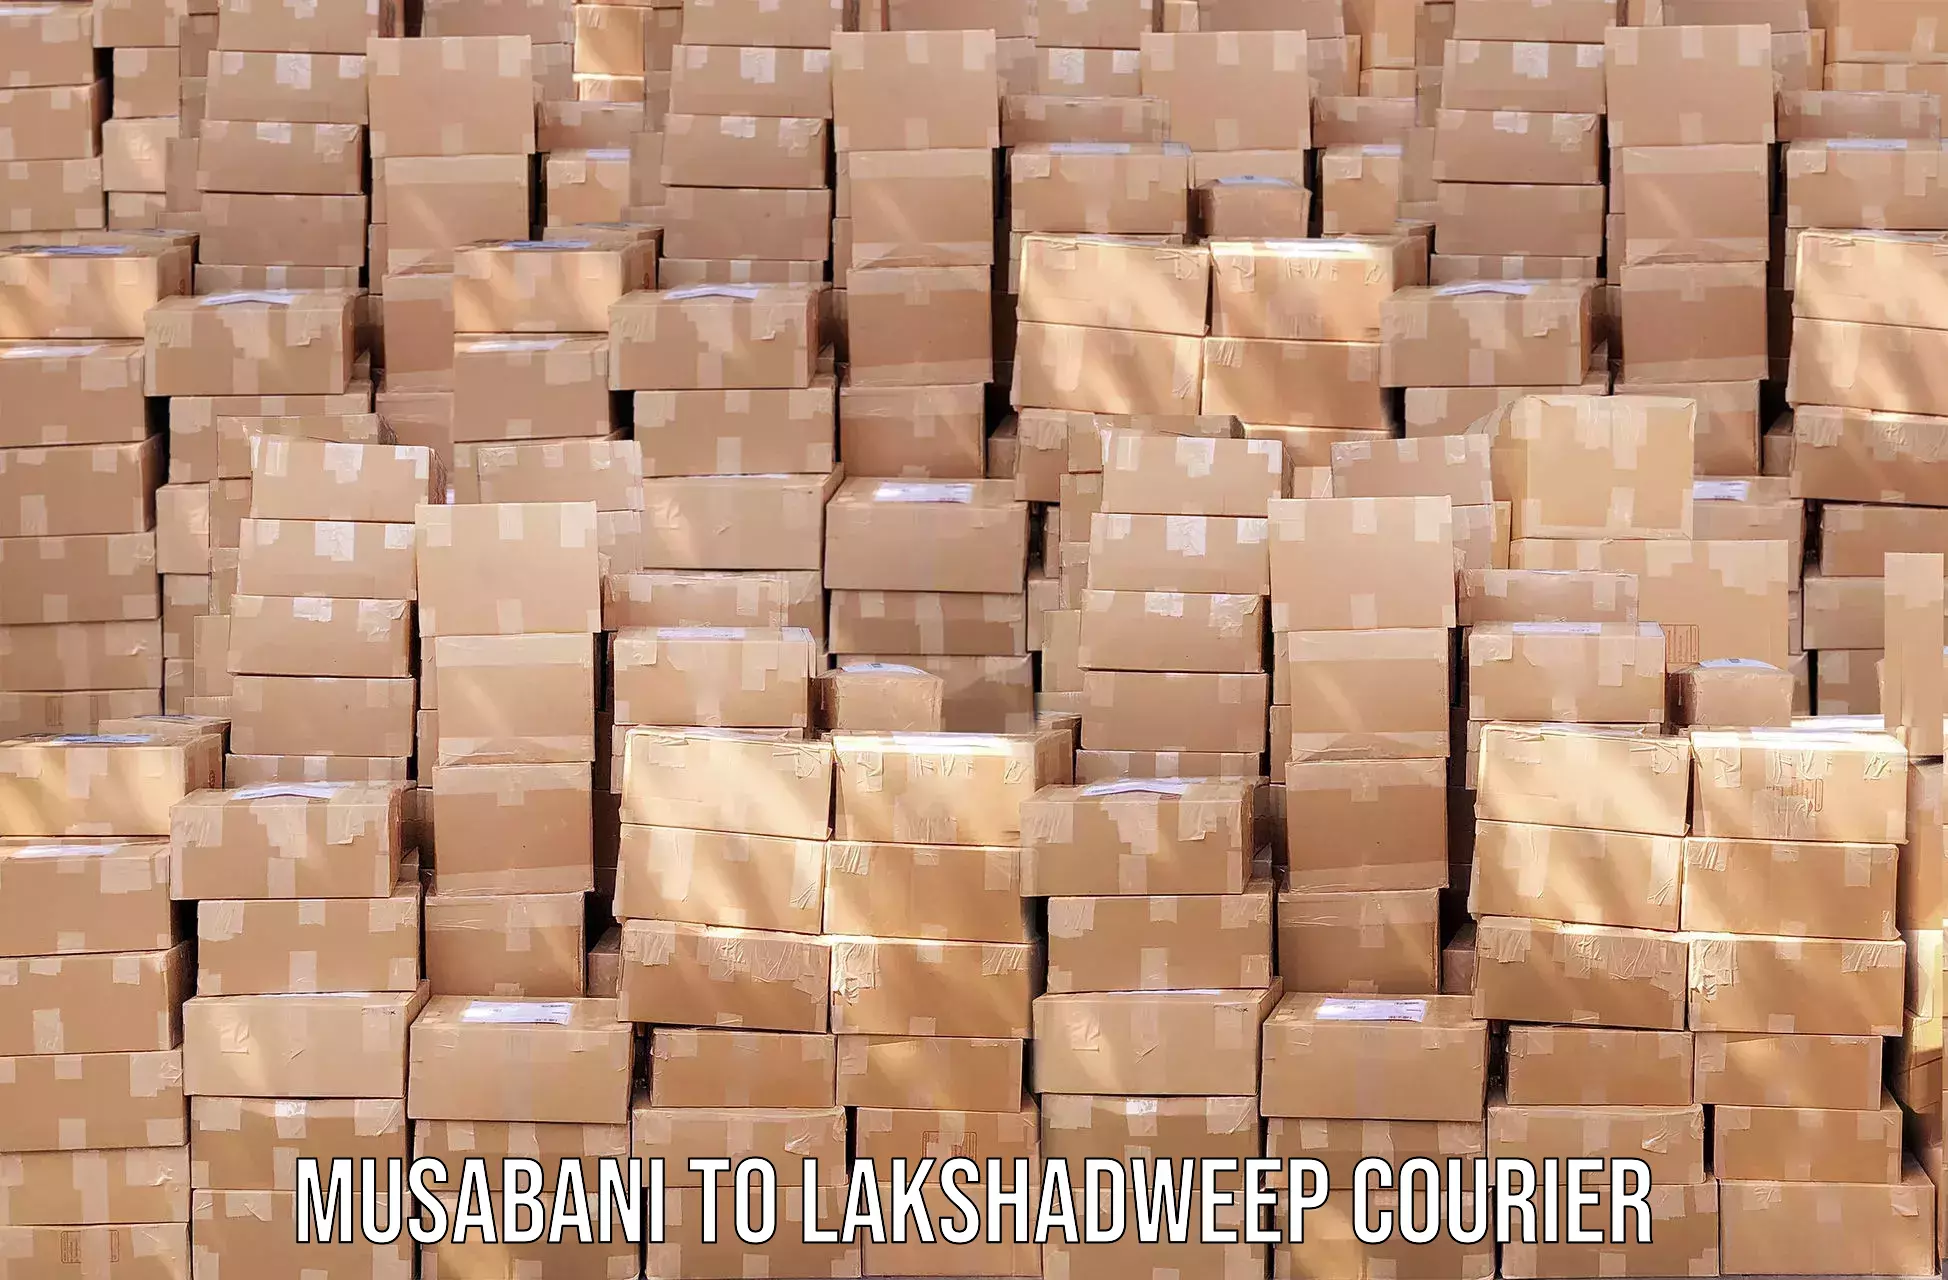 Express logistics Musabani to Lakshadweep